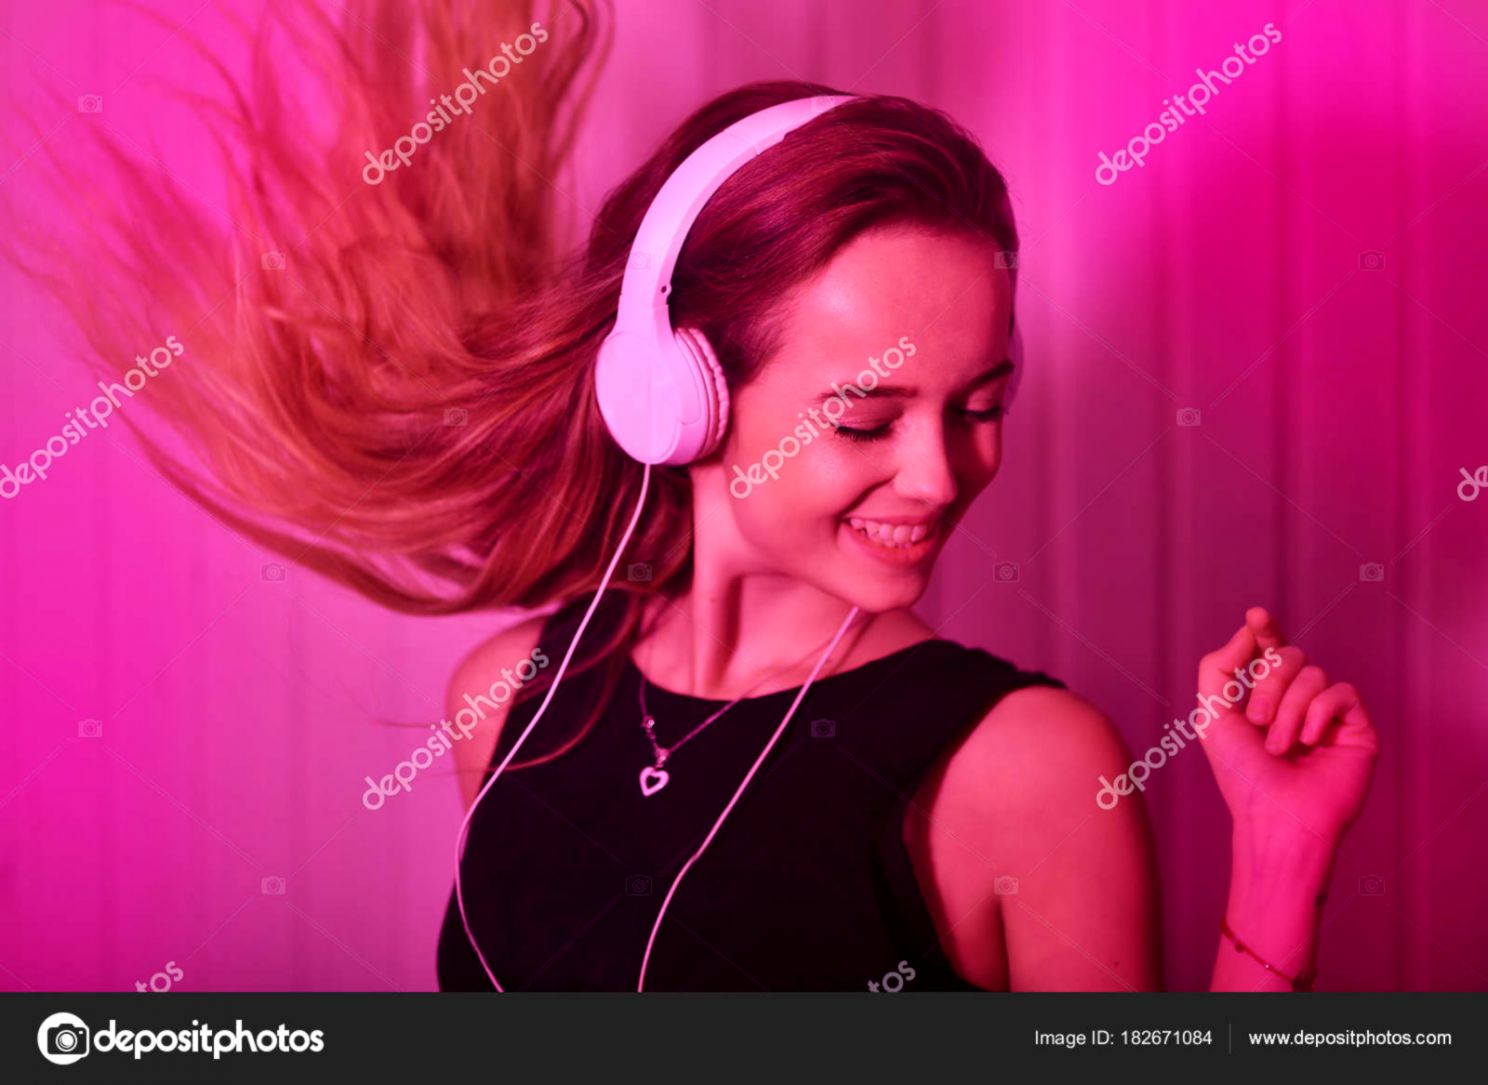 Музыки над головой. Девушка в наушниках. Девушка в розовых наушниках. Красивая девушка в наушниках фото.